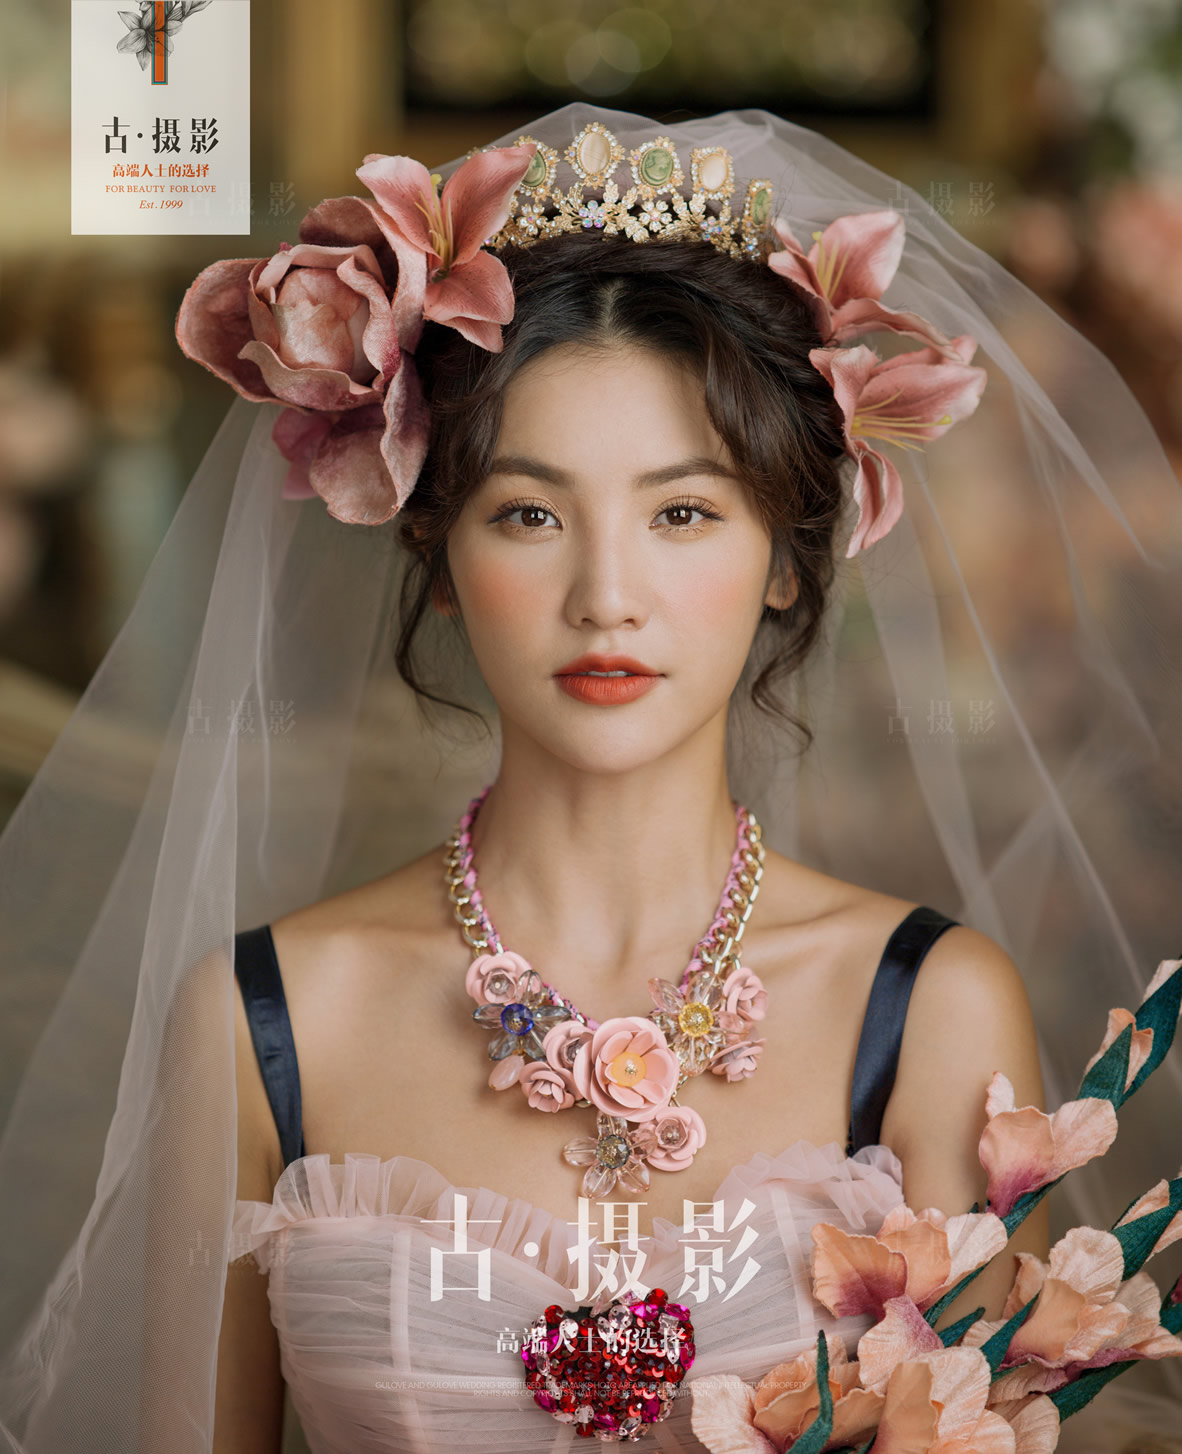 Queen-Ⅱ - 明星范 - 古摄影婚纱艺术-古摄影成都婚纱摄影艺术摄影网